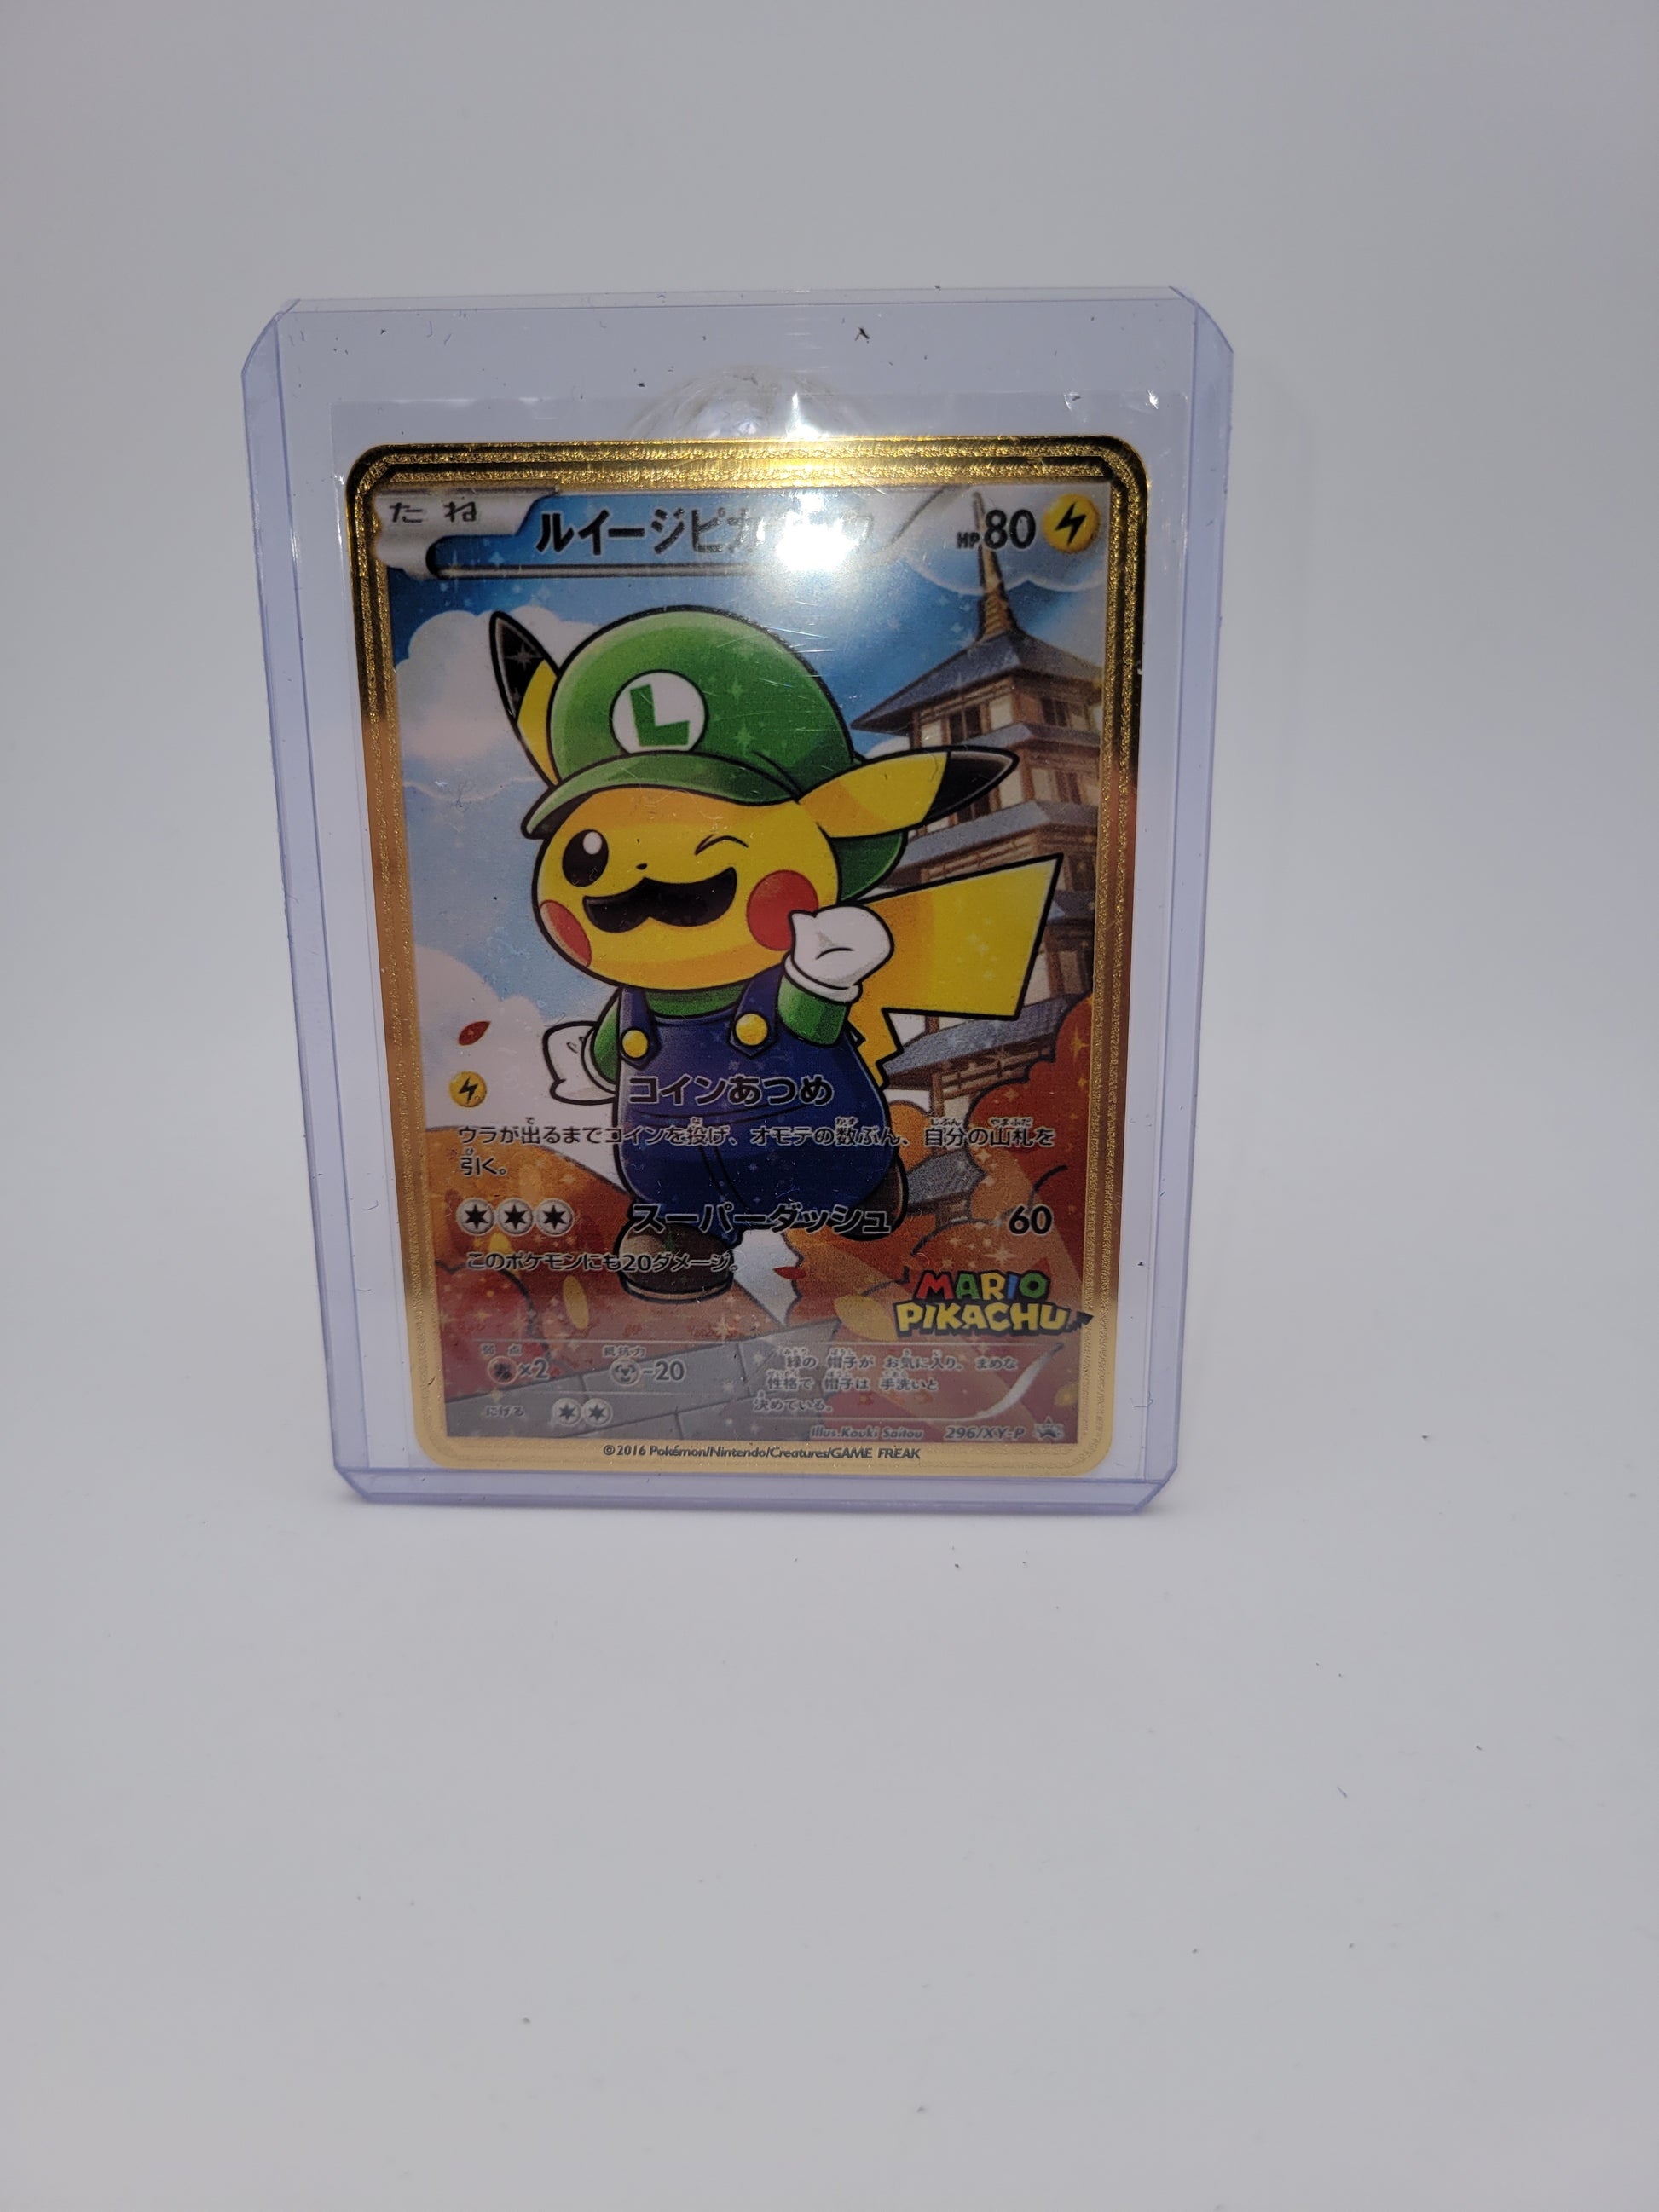 Fan art gold card of Pikachu dressed as Luigi